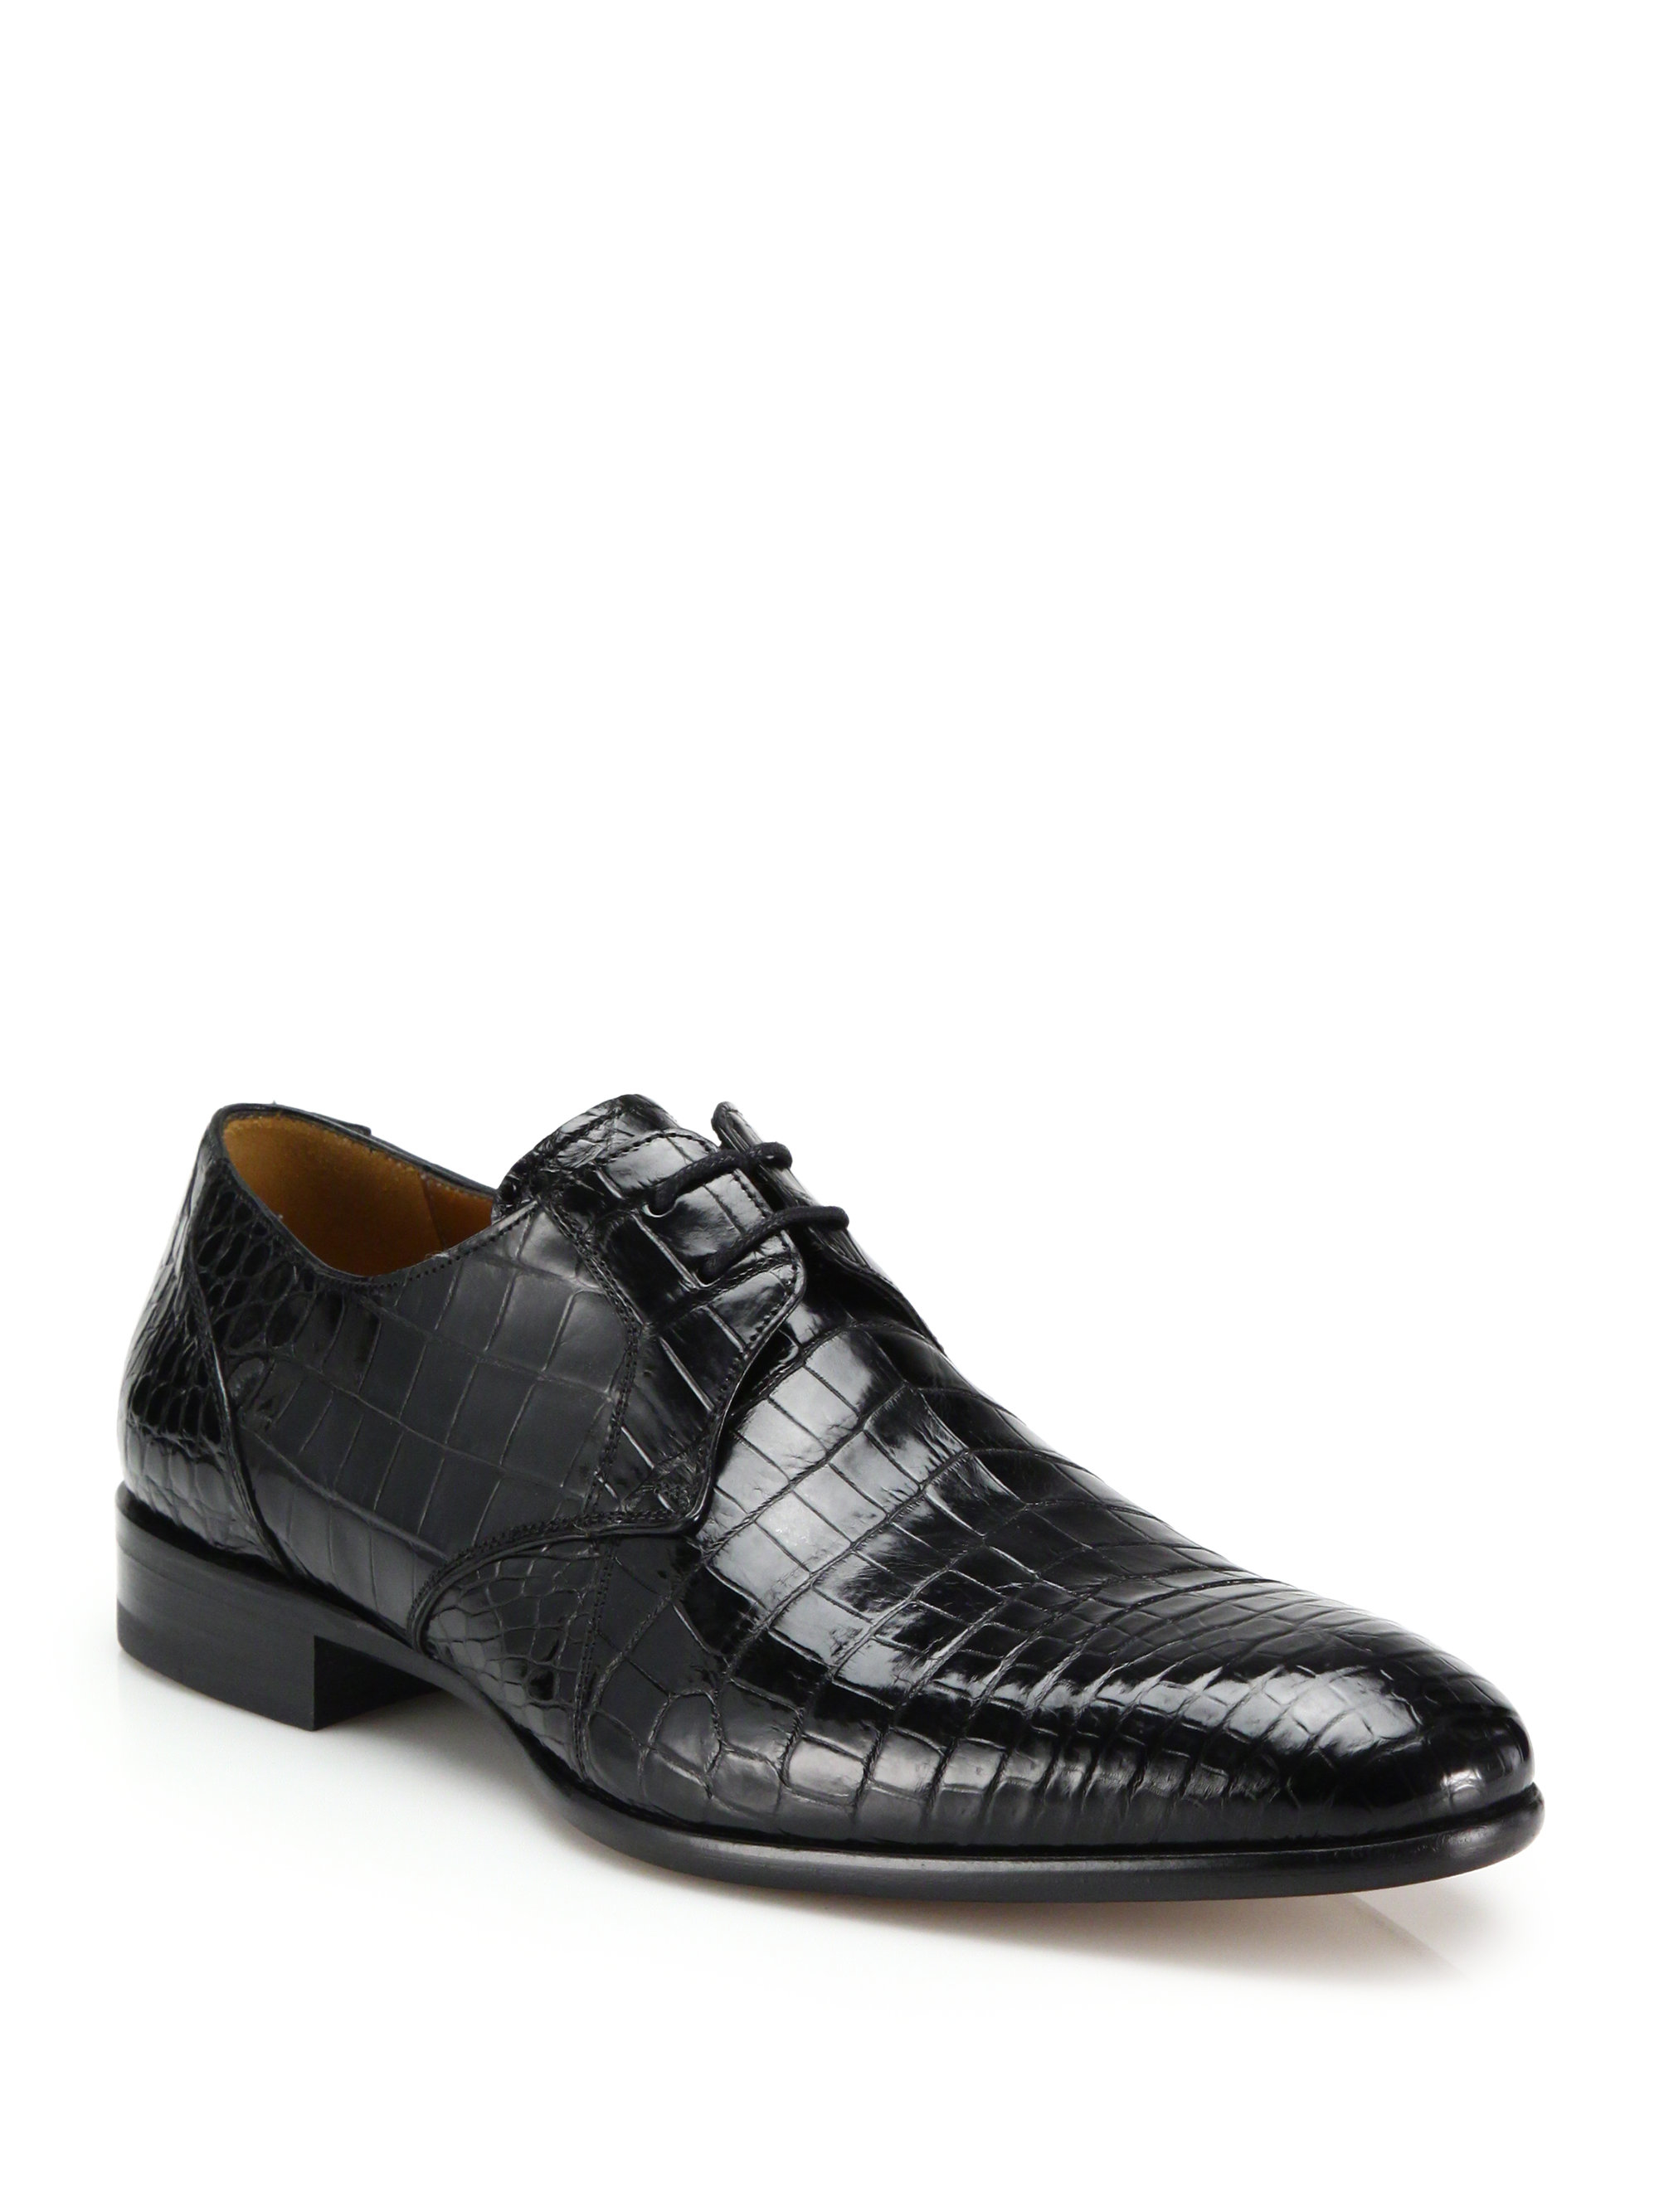 Mezlan Gastone Crocodile Derby Shoes in Black for Men - Lyst